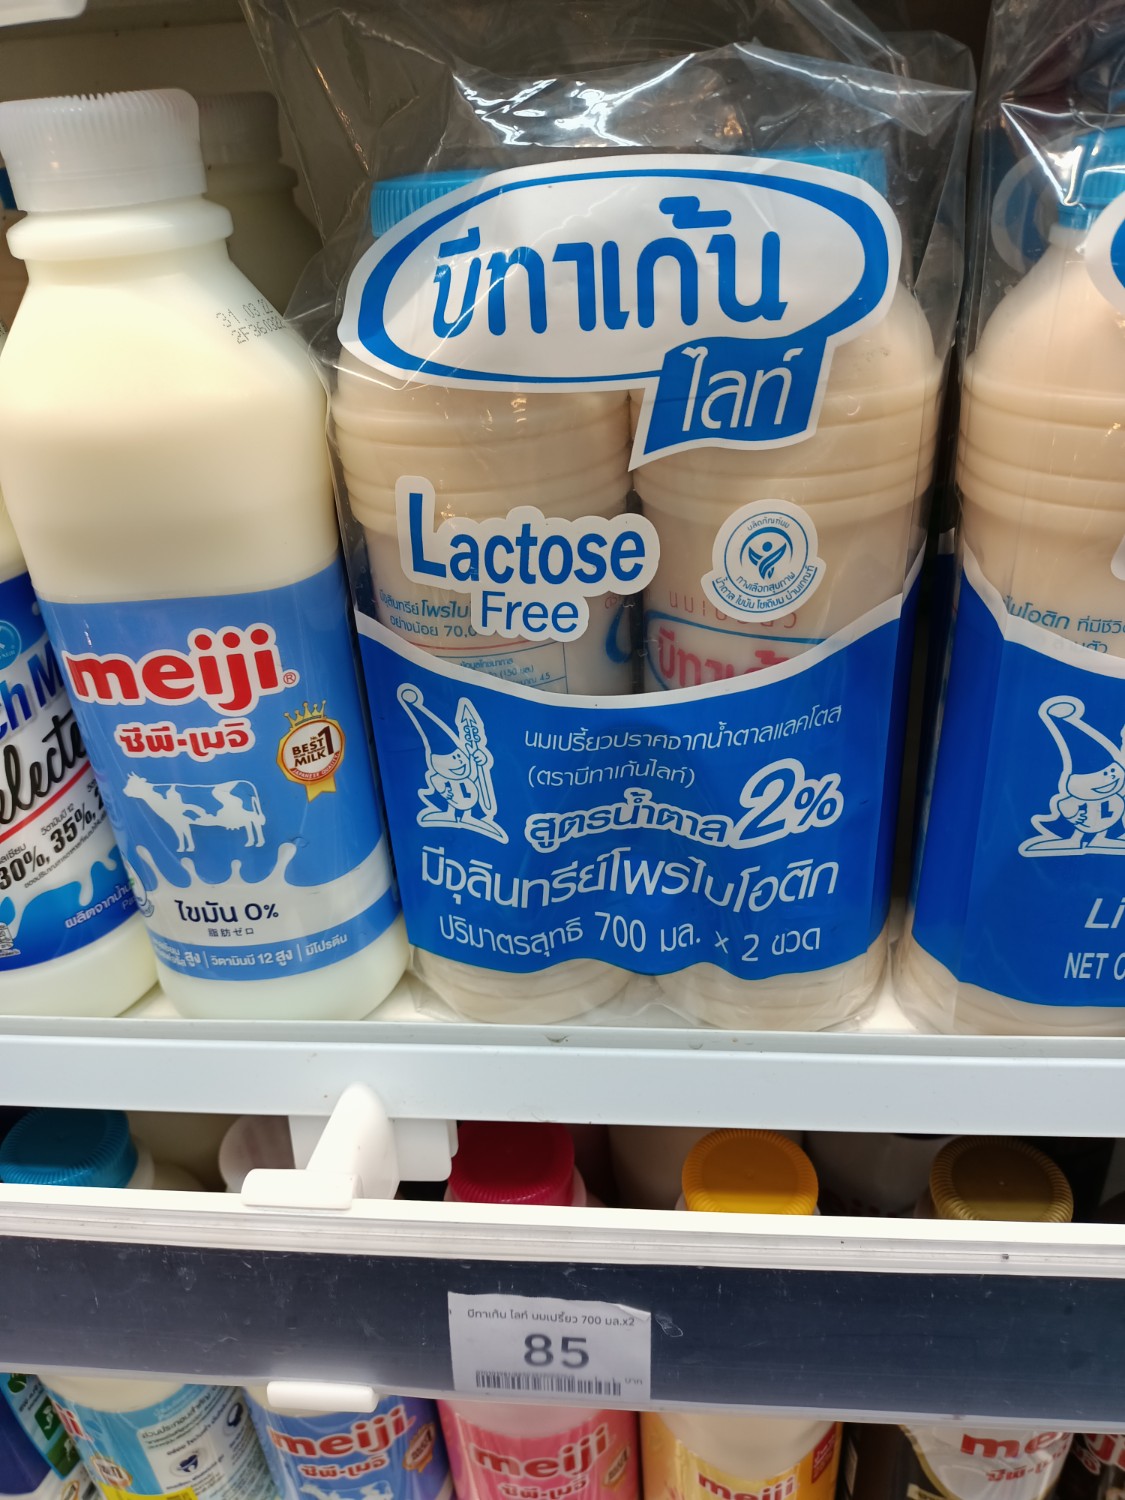 ทำไมซื้อ นม แพ็ค 2 ขวดแพงกว่าซื้อแบบทีละขวดเดียวครับ ? หรือเป็นค่าถุง pantip